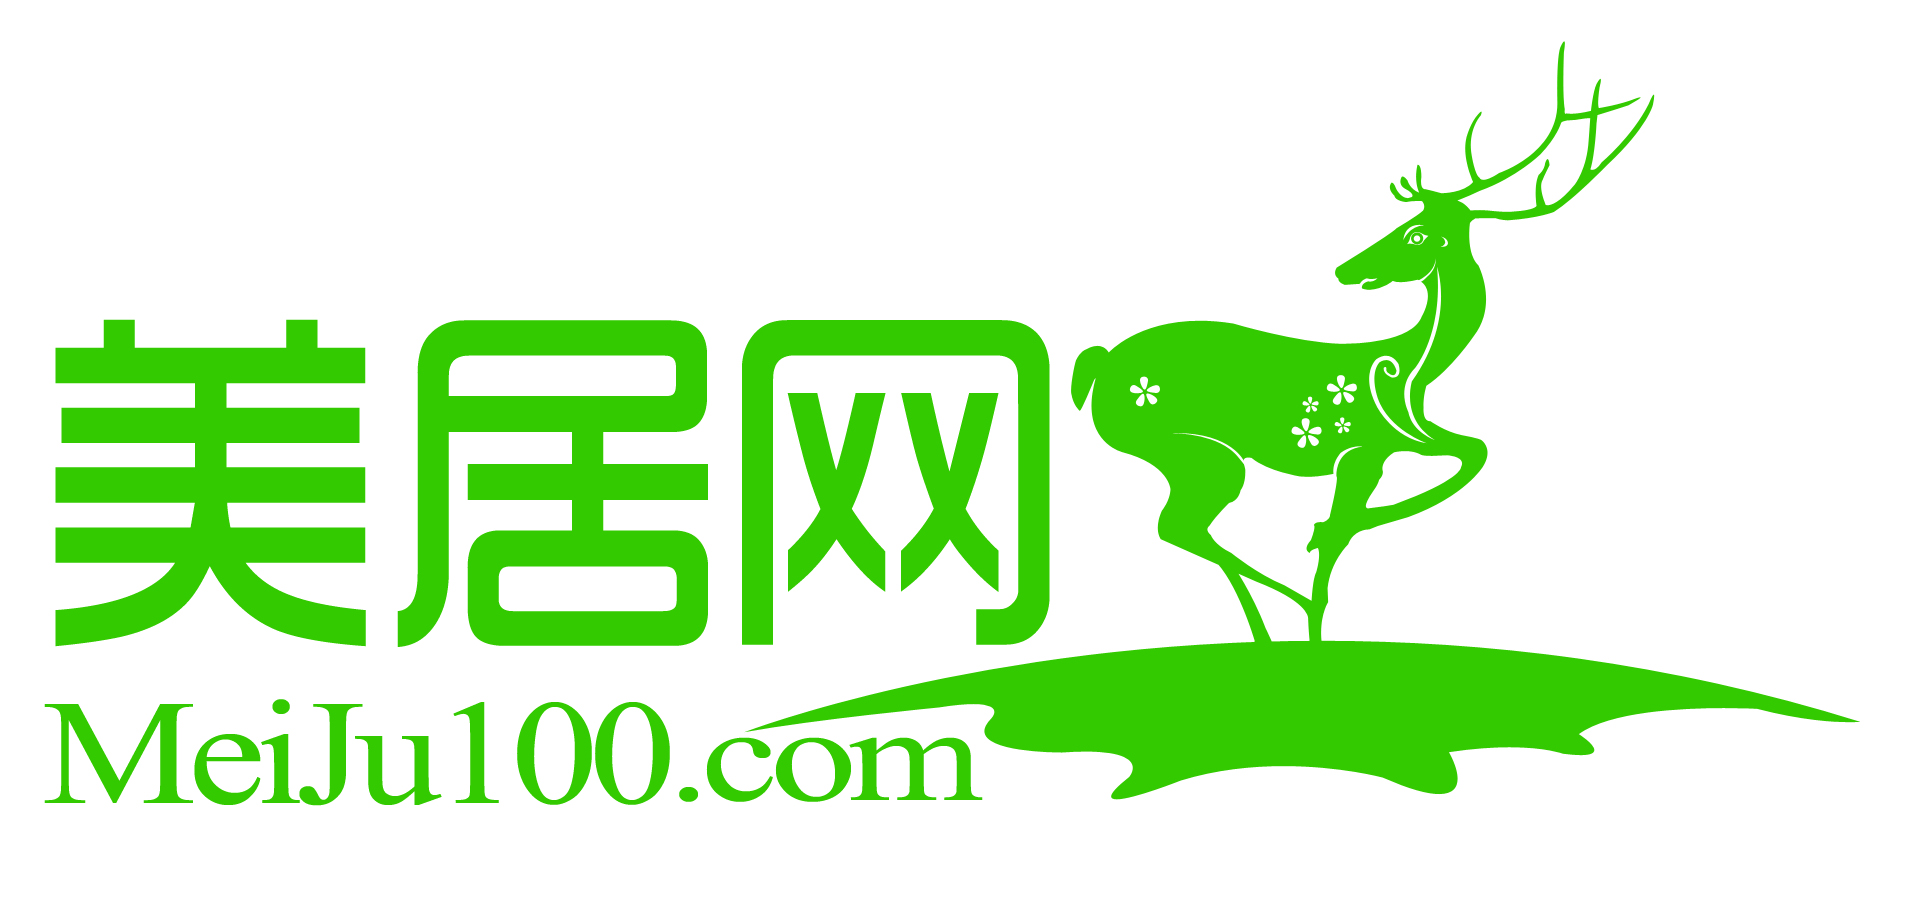 MeiJu100.com